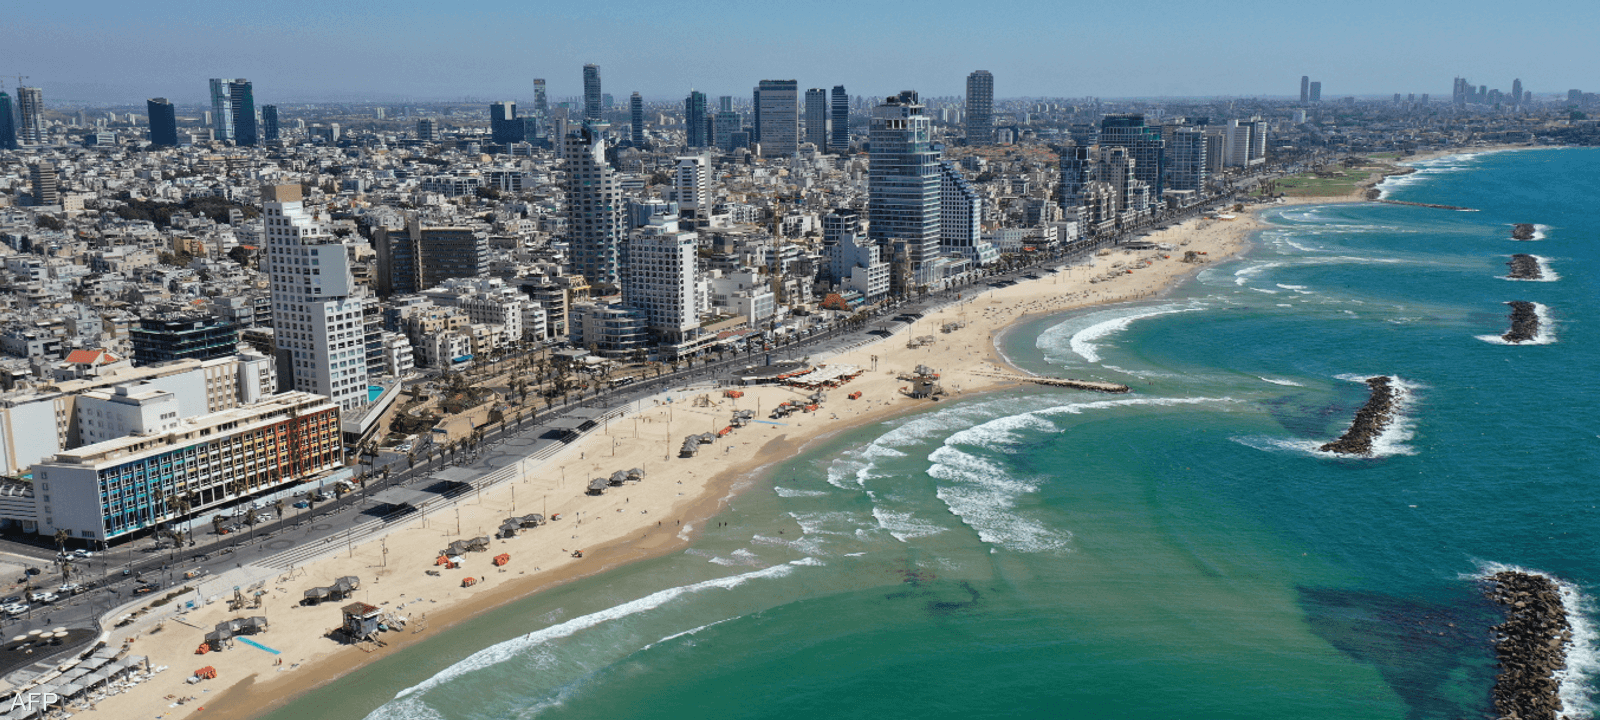 تل أبيب احتلت صدارة أعلى المدن من حيث تكلفة المعيشة عالميا